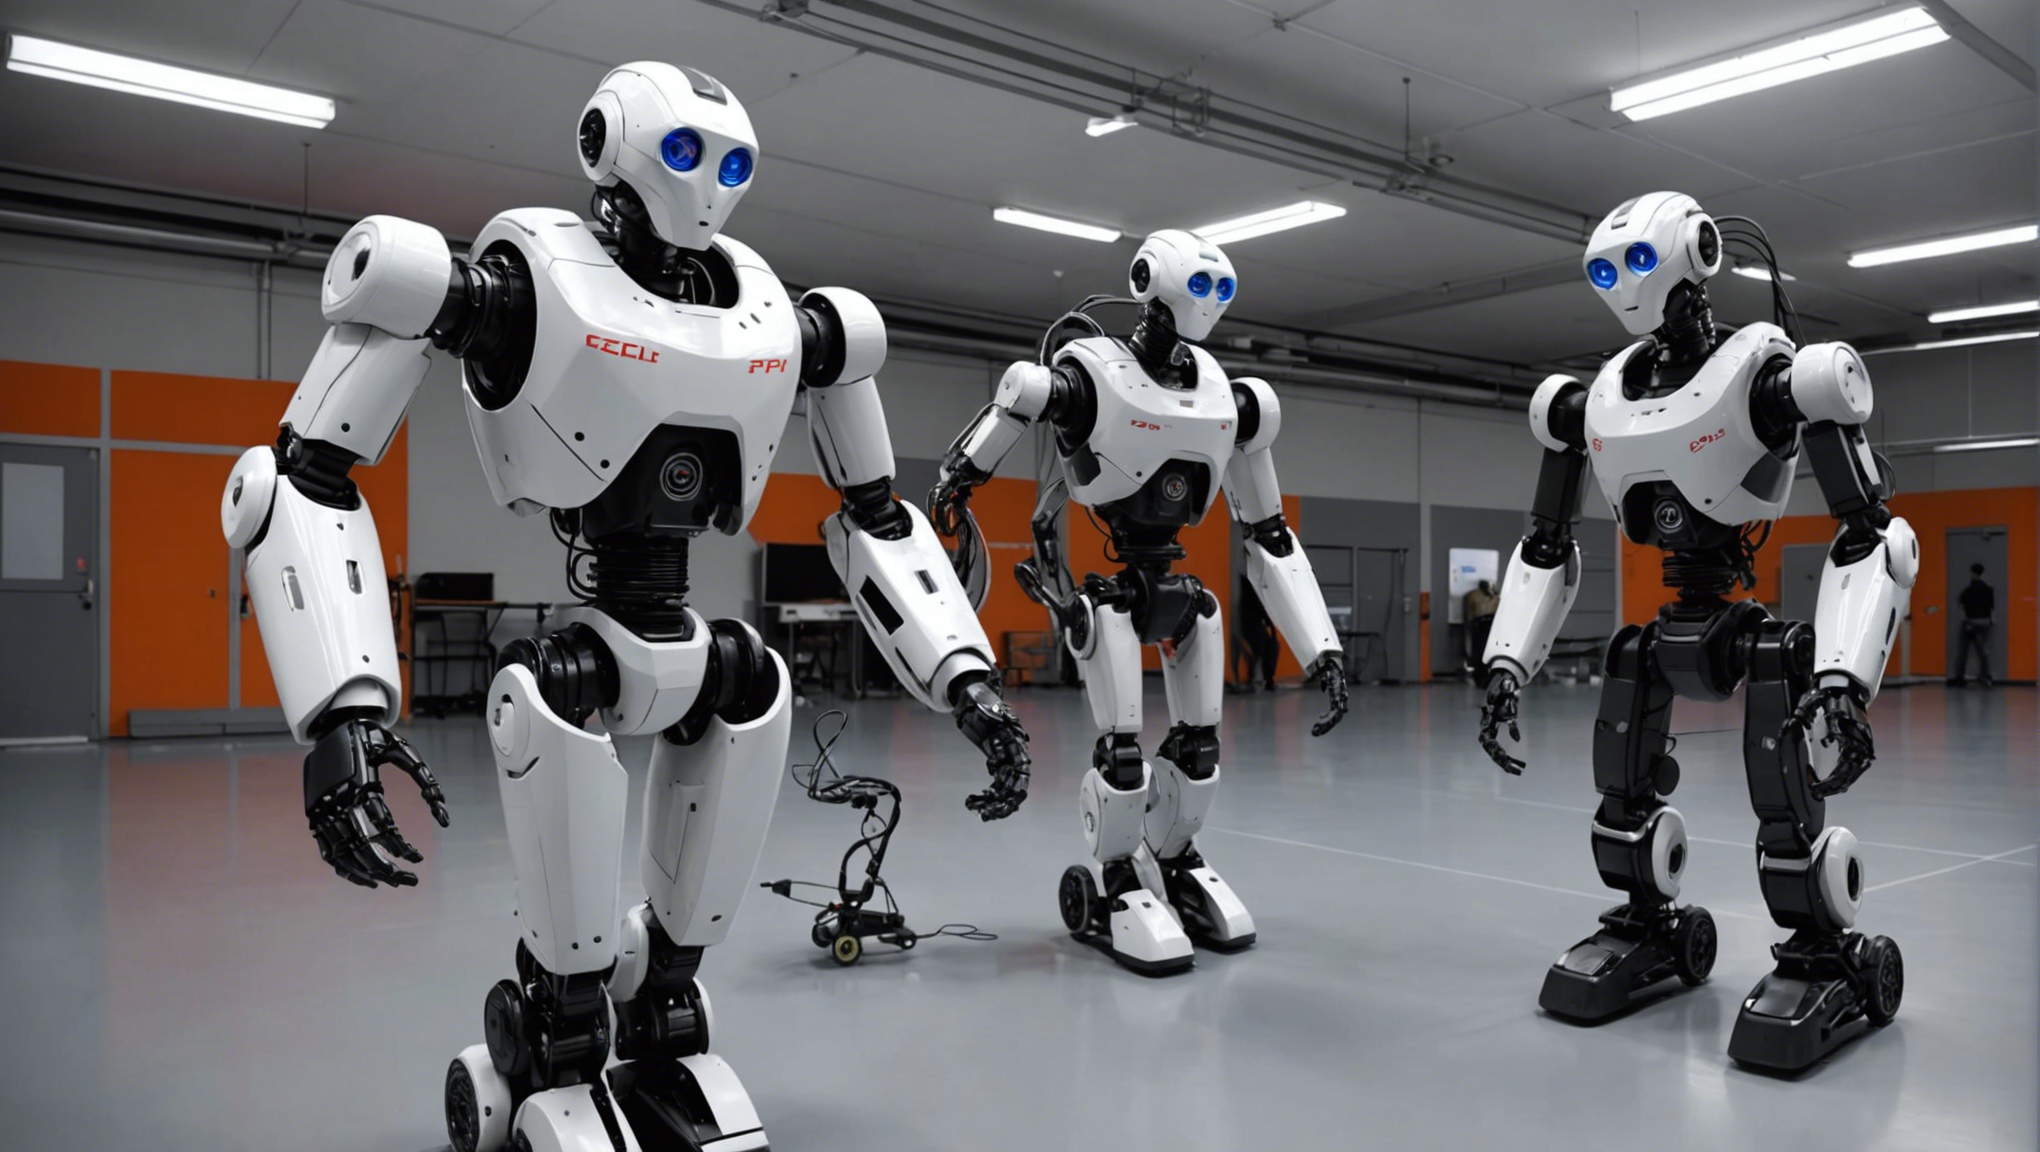 découvrez les dernières avancées en robotique à l'epfl (école polytechnique fédérale de lausanne) avec nos robots nouvelle génération. formation, recherche et projets innovants vous attendent dans ce haut-lieu de la robotique en suisse.